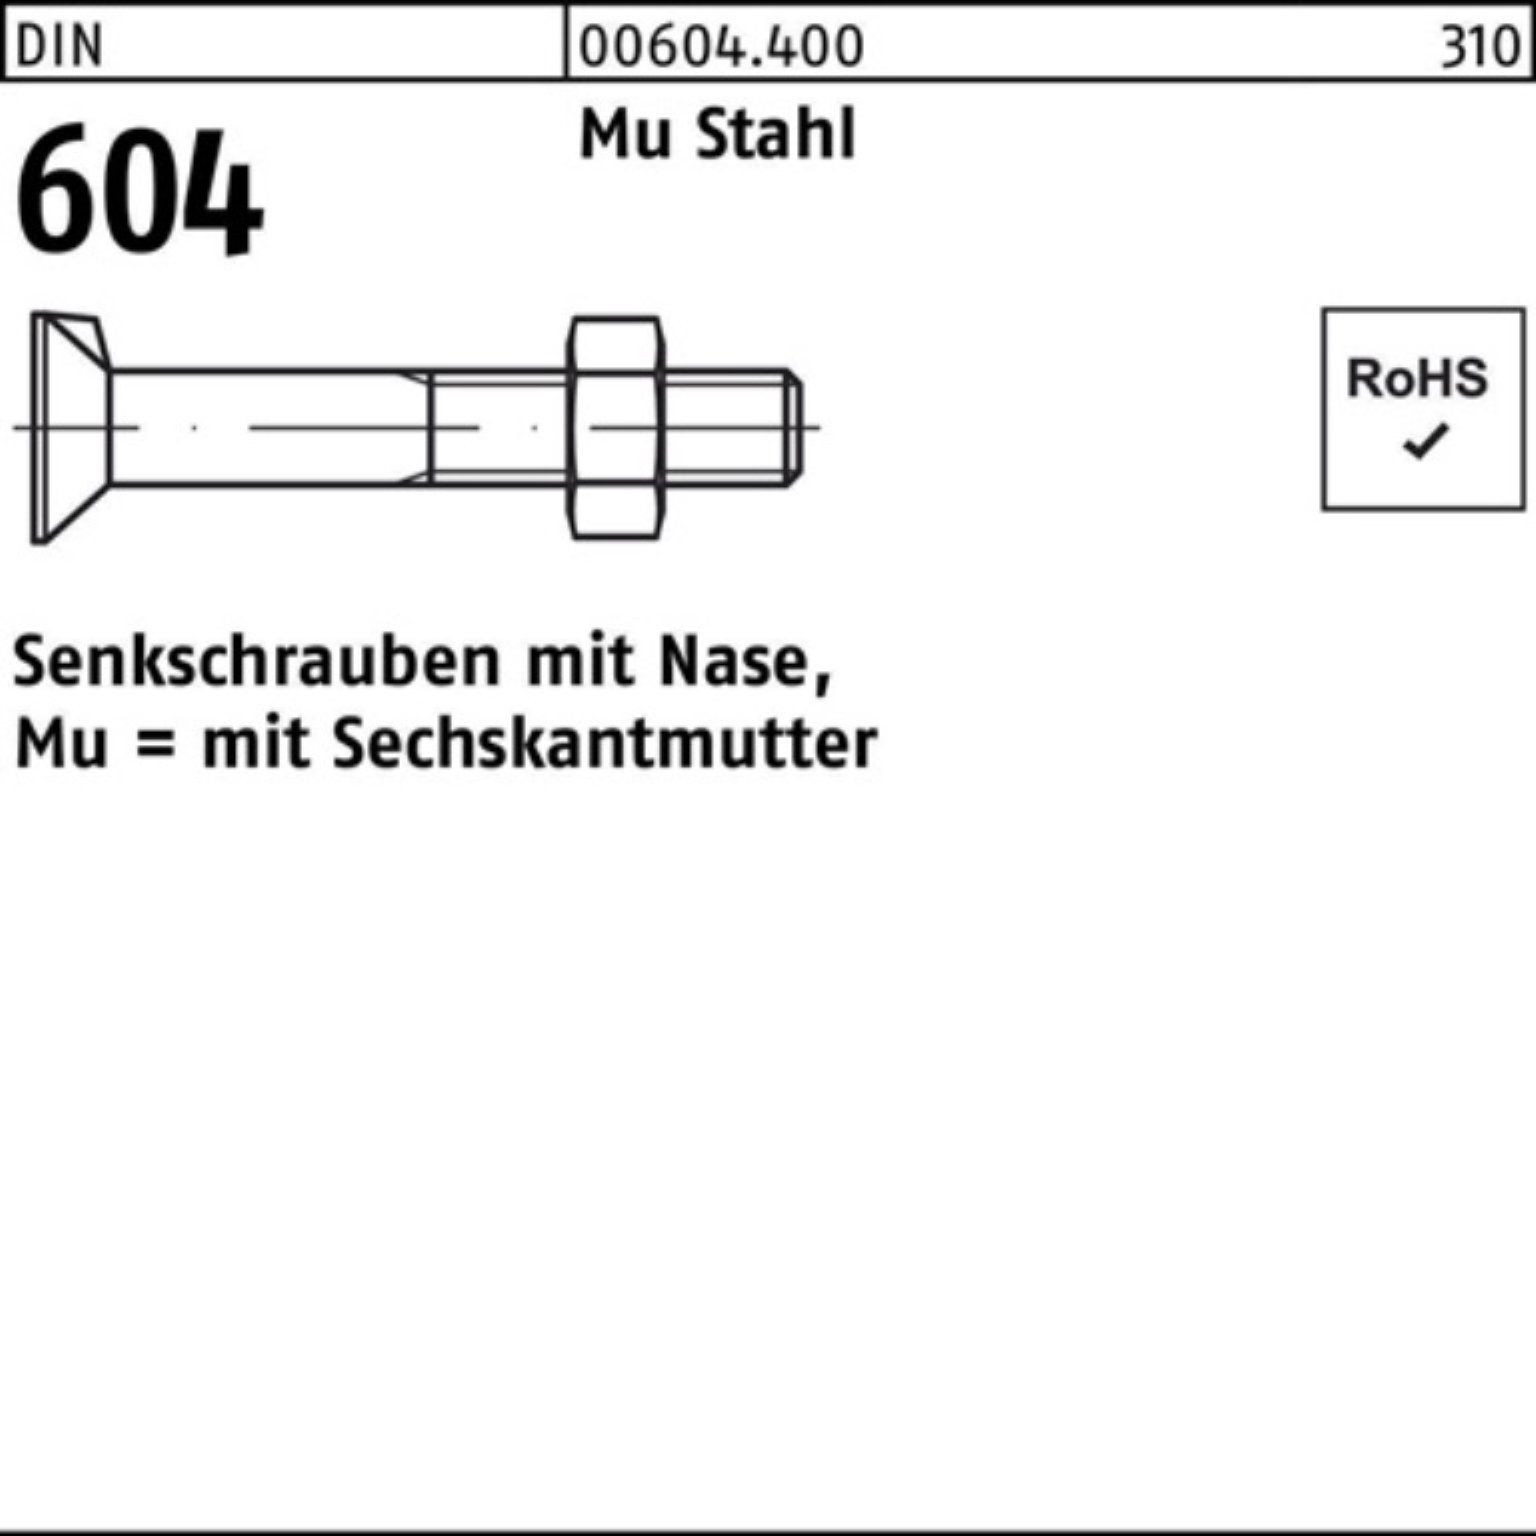 45 DIN Senkschraube Senkschraube M16x 5 Mu 604 Nase/6-ktmutter Reyher Pack 4.6 100er Stahl